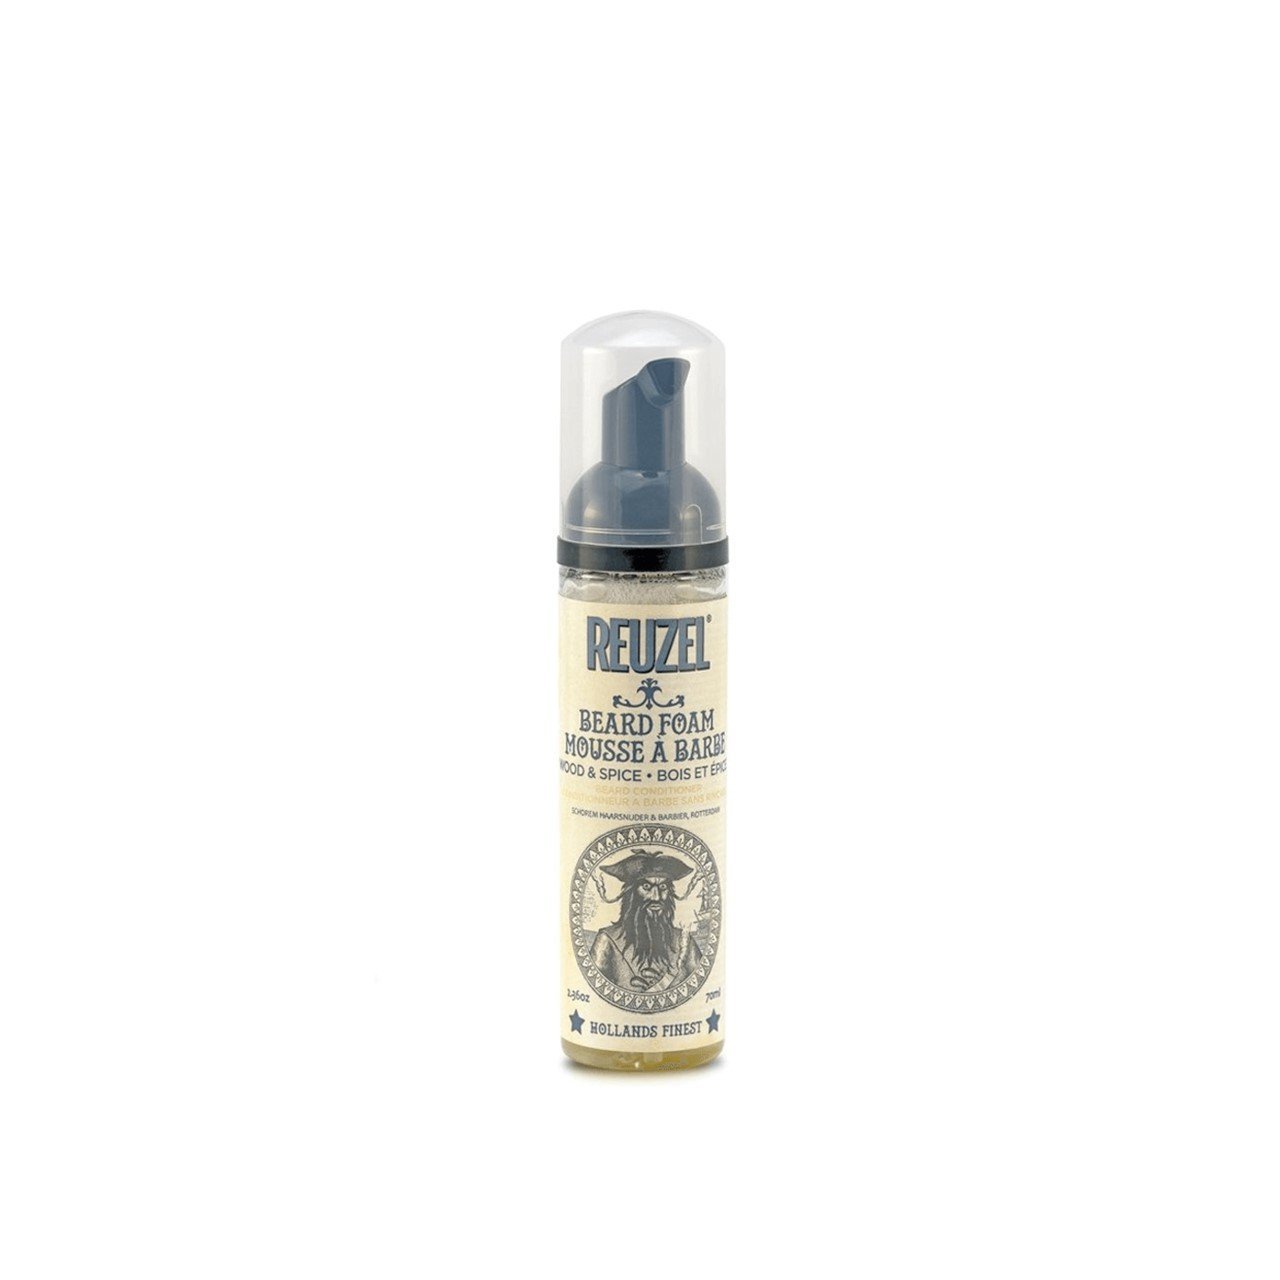 Buy Reuzel Beard Foam Wood & Spice 70ml · South Africa